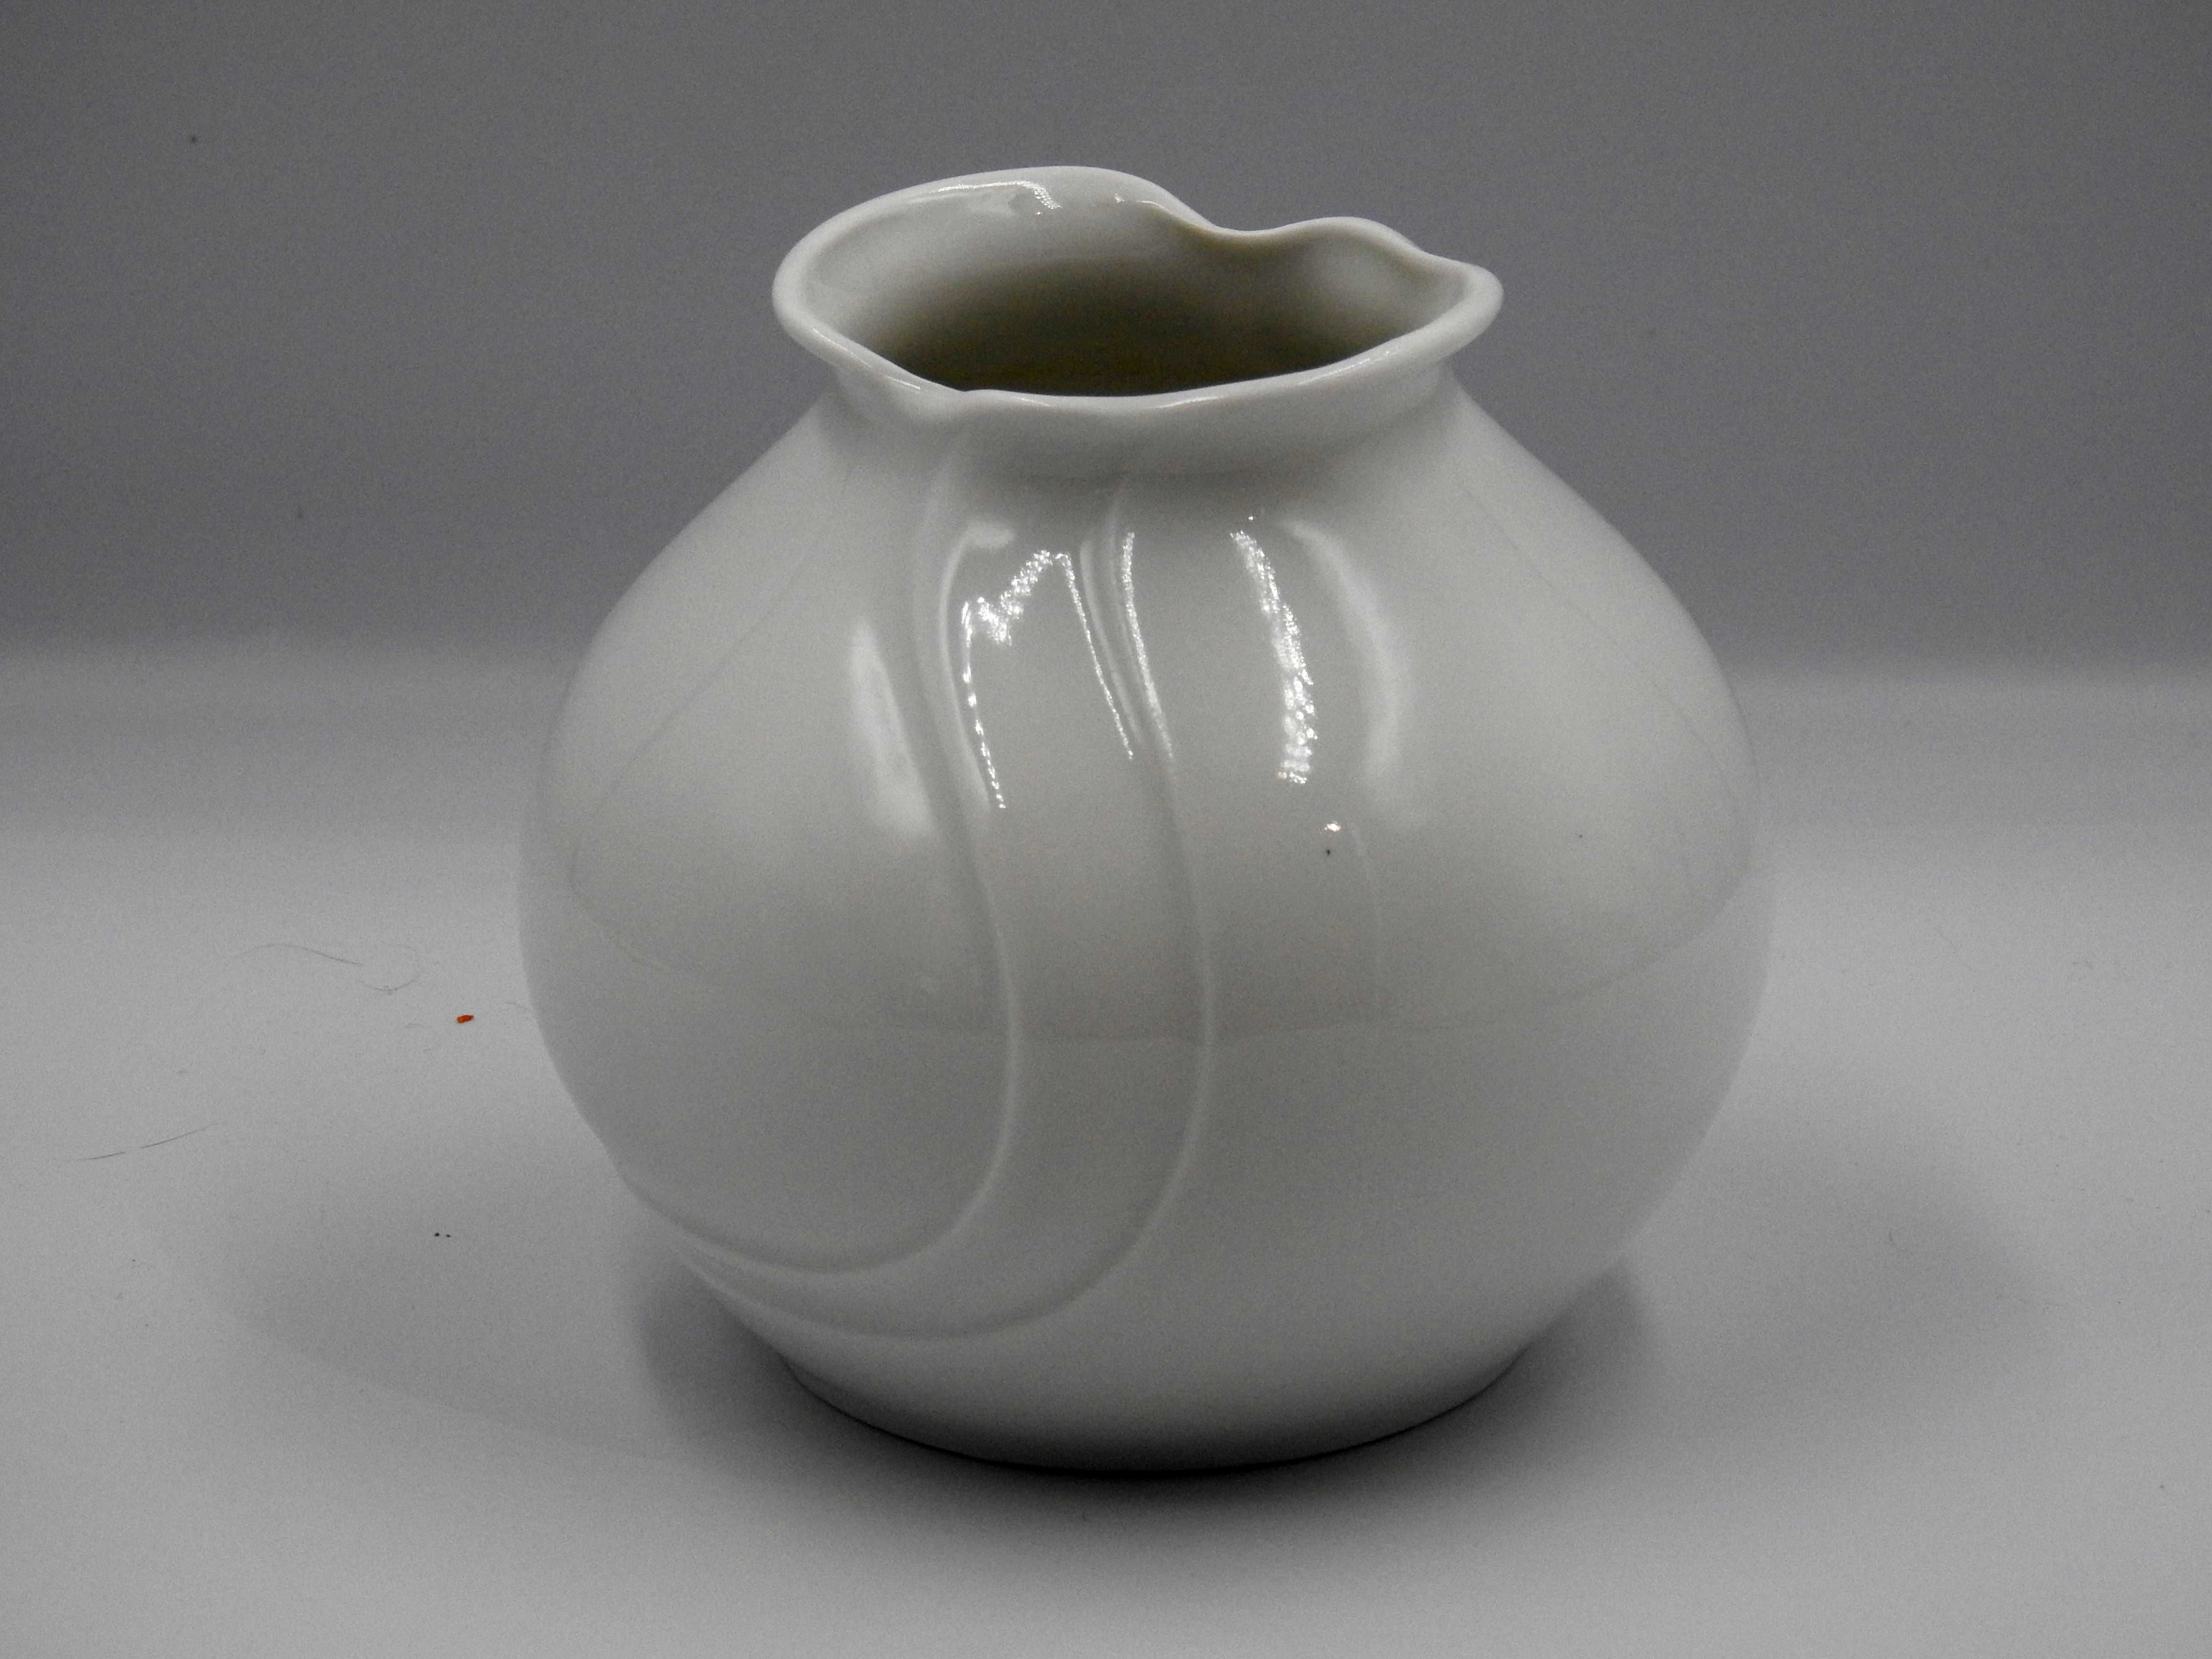 Śliczny biały porcelanowy wazon niemiecki - sygnowany